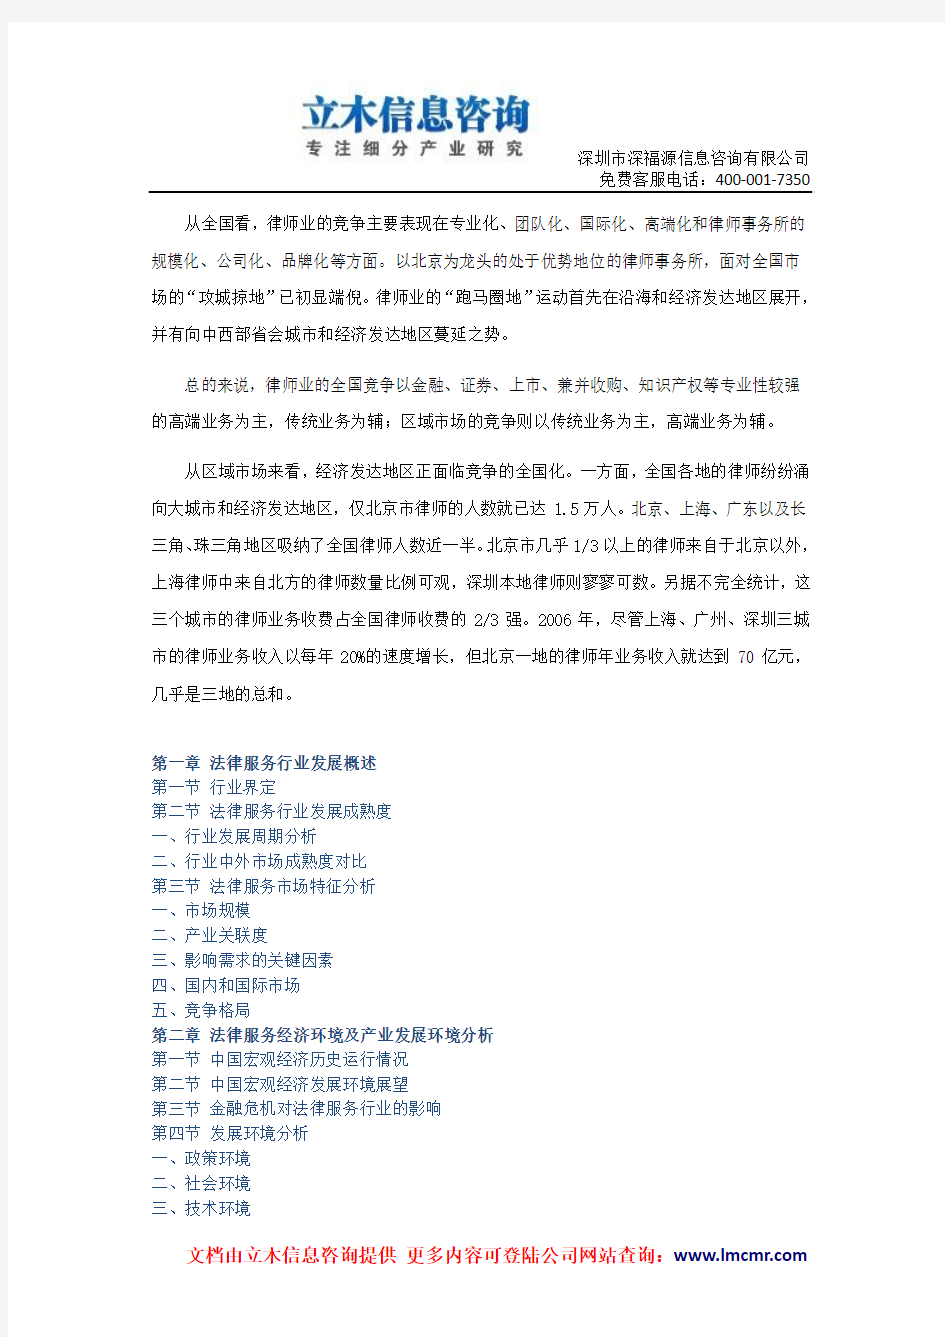 中国法律服务市场深度调研报告(2015版)